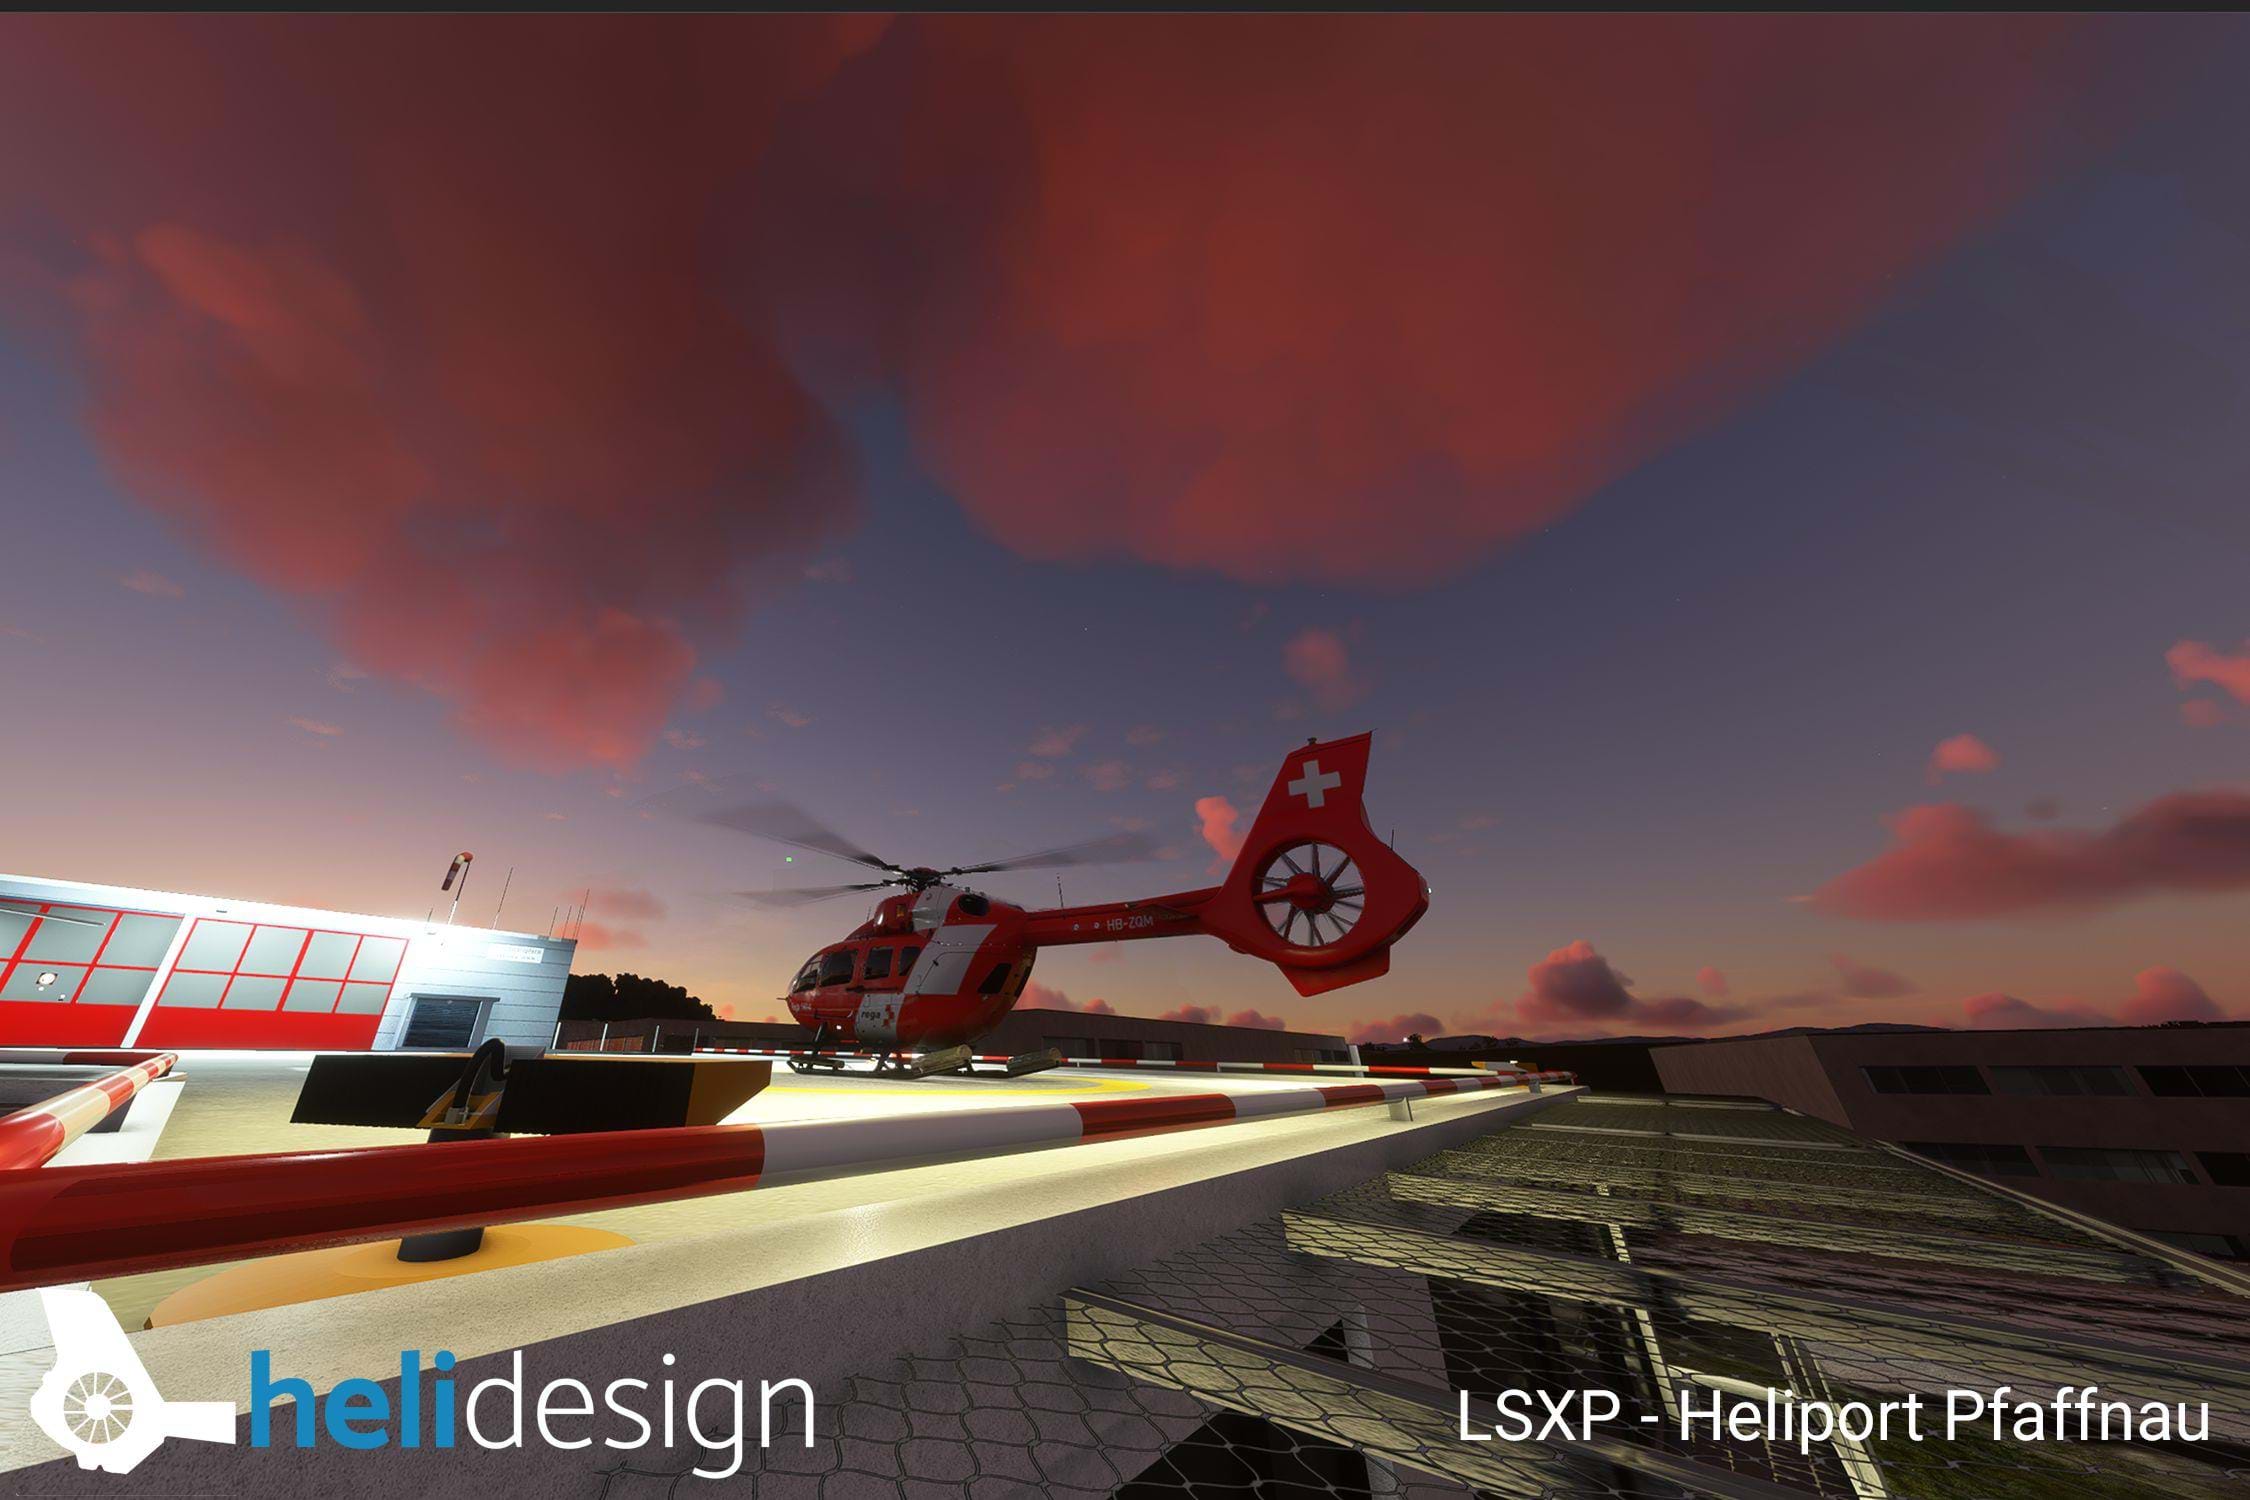 Helidesign.ch Pfaffnau heliport for Microsoft Flight Simulator